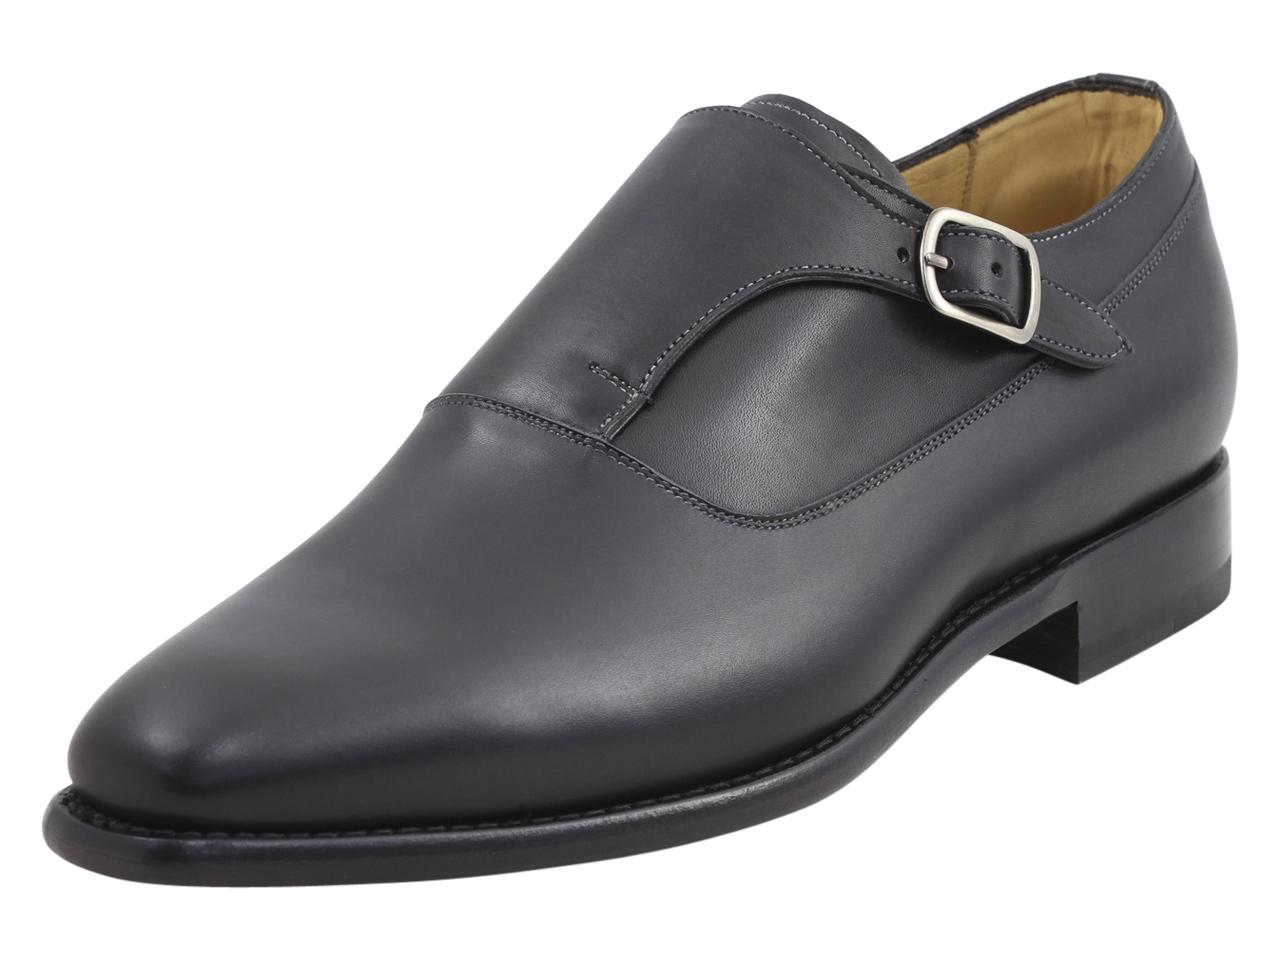 Mezlan Platinum Men's Algar Memory Foam Leather Monk Strap Loafers Shoes - Black - 8.5 D(M) US